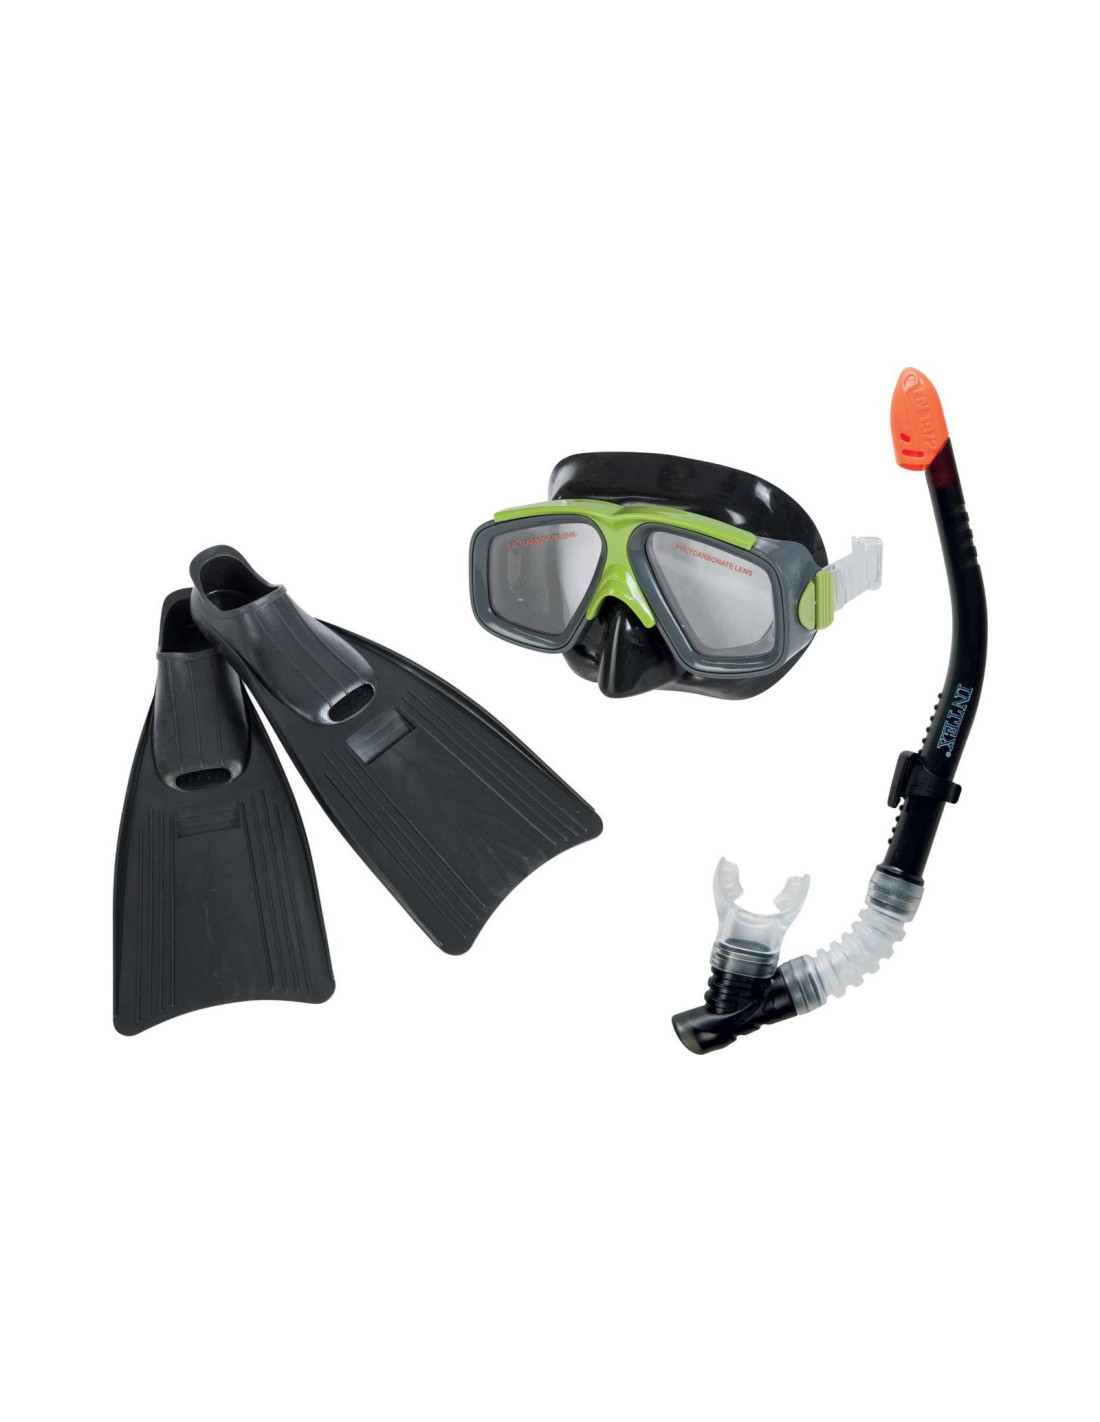 Наборы маска трубка. Набор для плавания (маска, трубка и ласты) Intex 8+. Маска для плавания Intex 55981. Интекс маска для подводного плавания с трубкой. Набор для плавания Intex 55657.